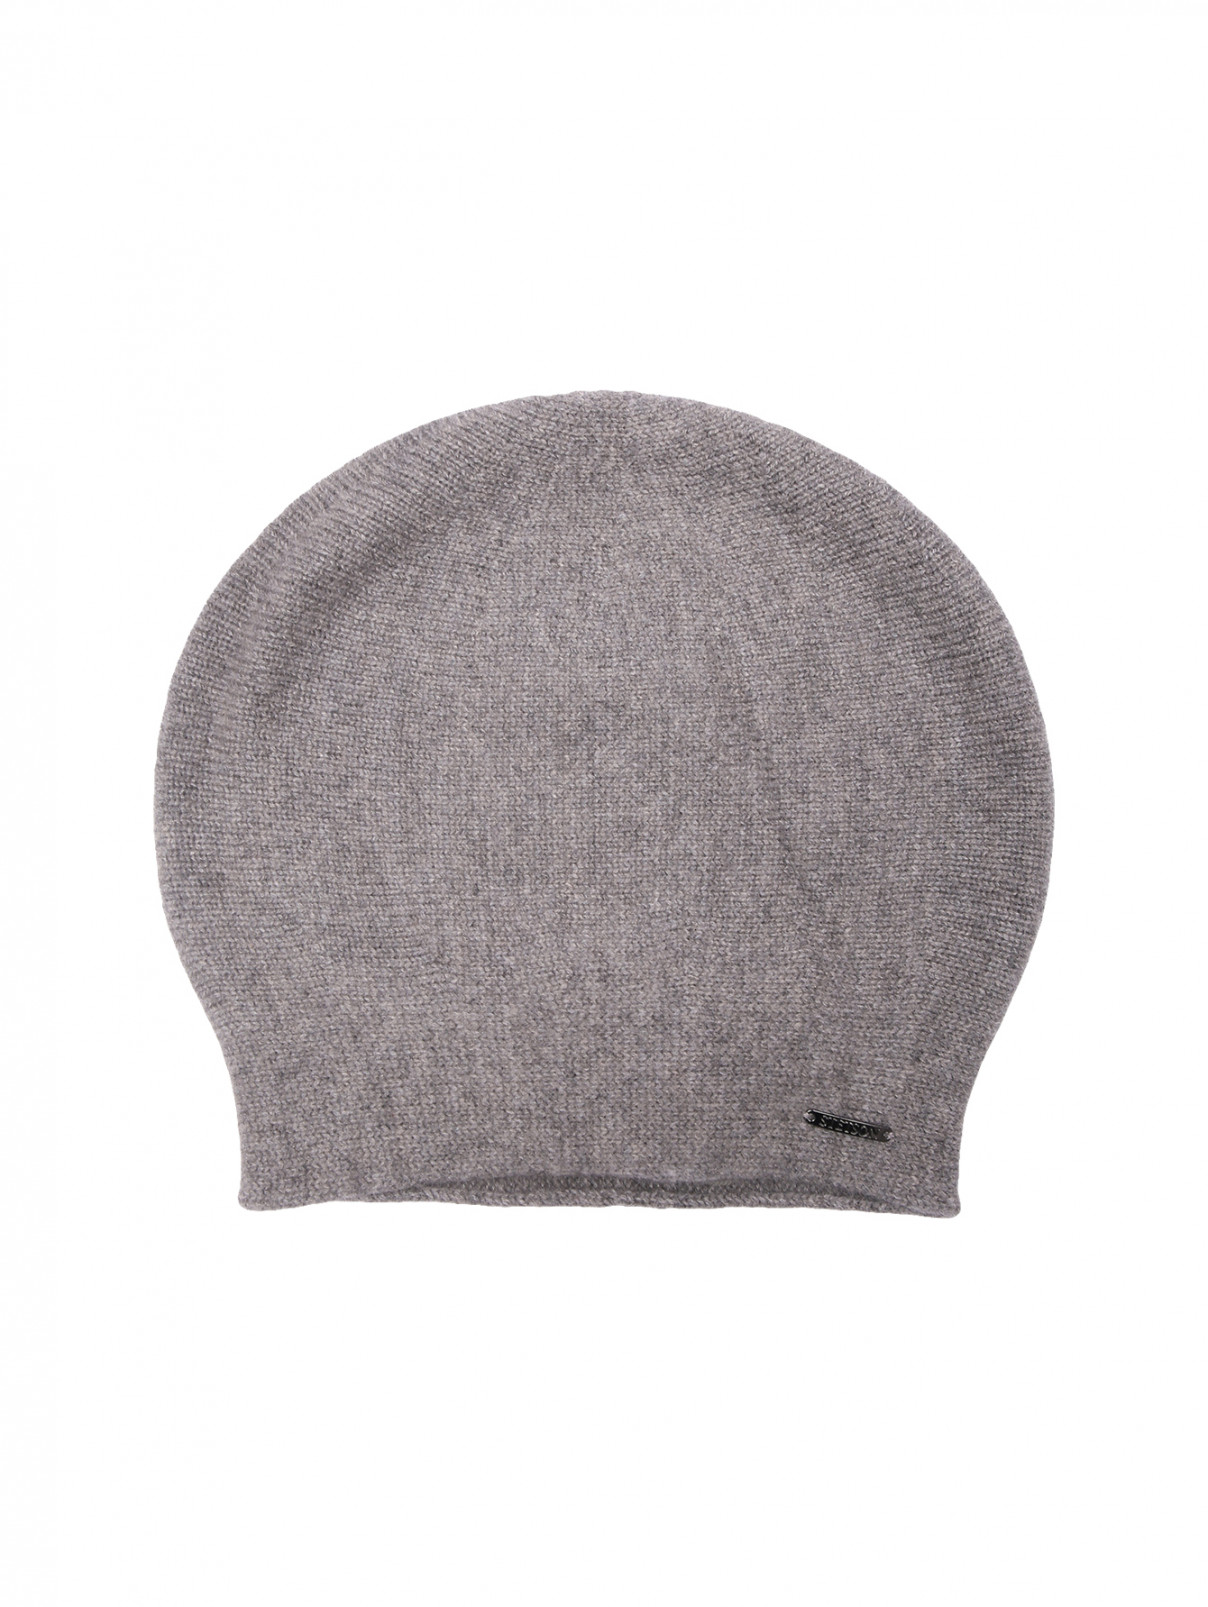 Однотонная шапка из кашемира Stetson  –  Общий вид  – Цвет:  Серый